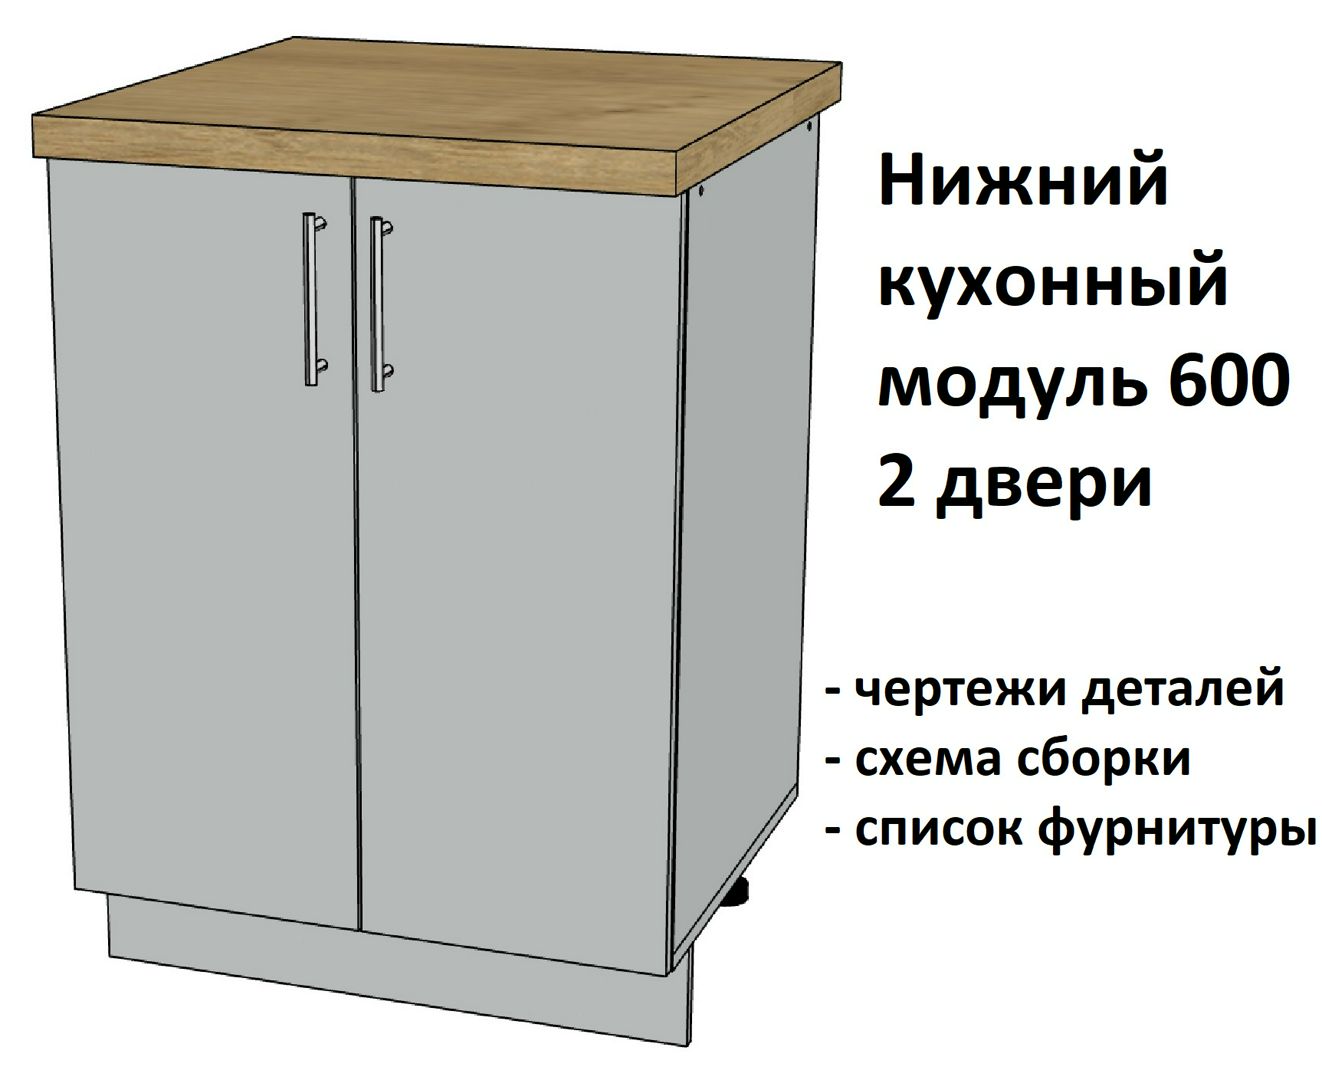 Нижний кухонный модуль 600, 2 двери - Комплект чертежей для изготовления корпусной мебели